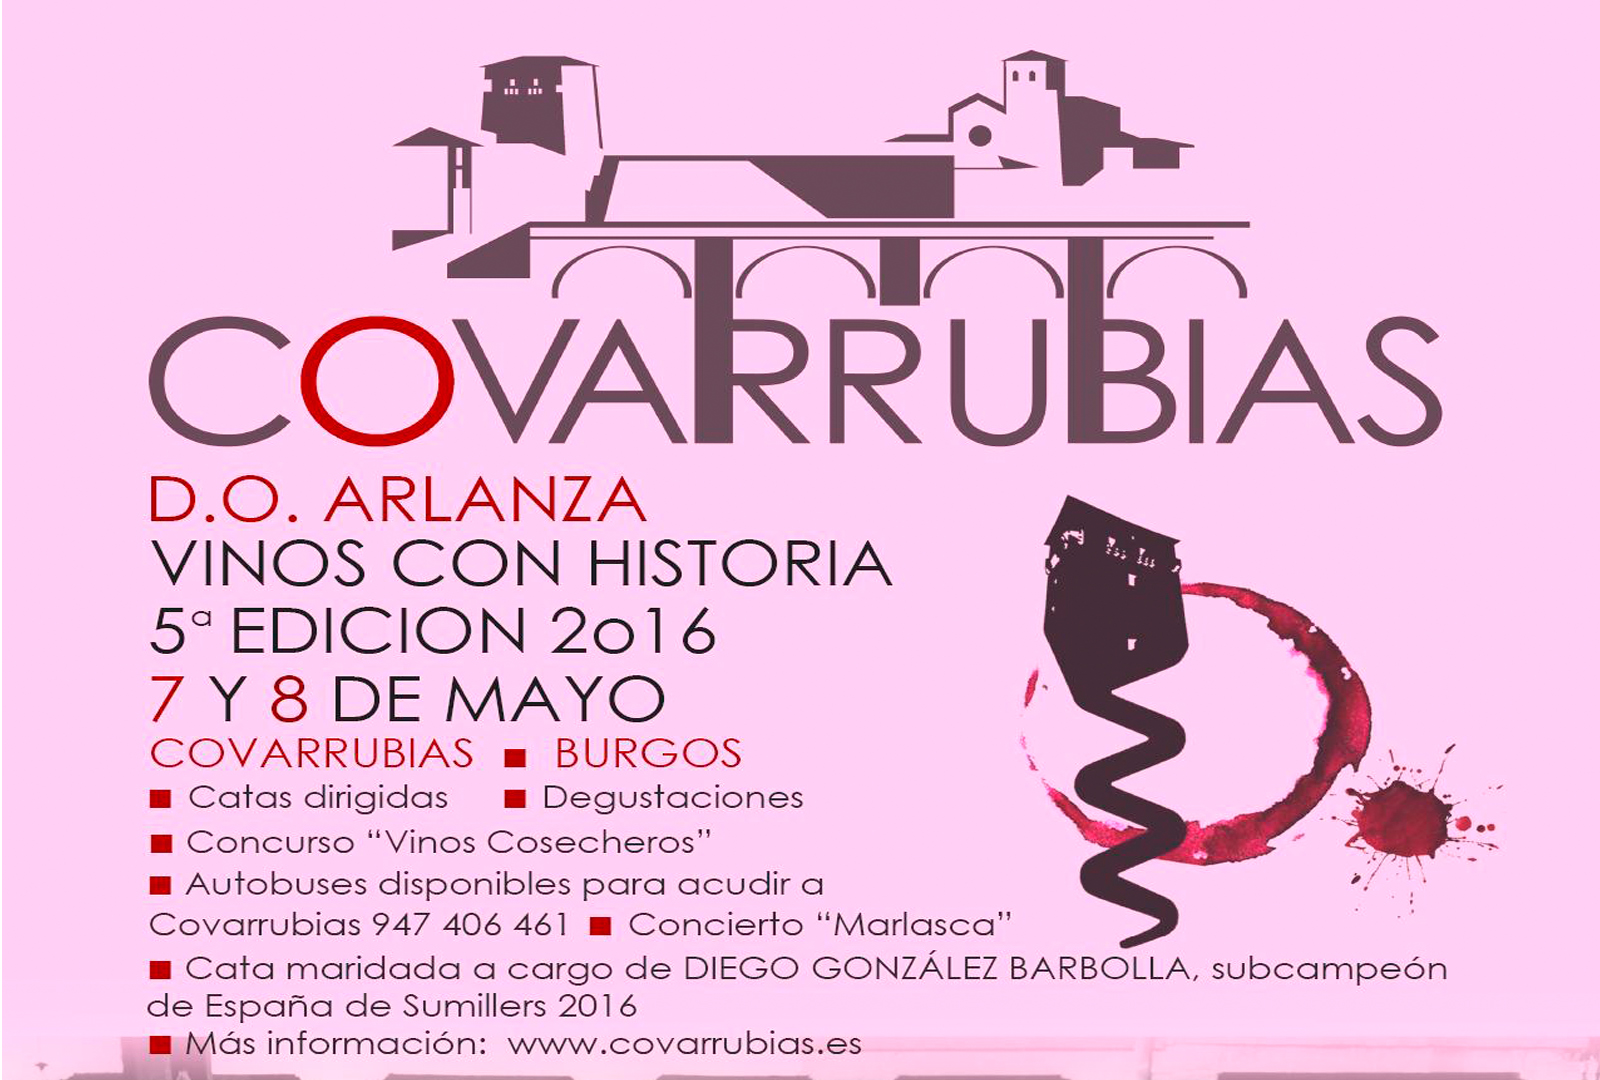 Covarrubias. Feria "Vinos con Historia D.O. Arlanza" - VINOS DIFERENTES